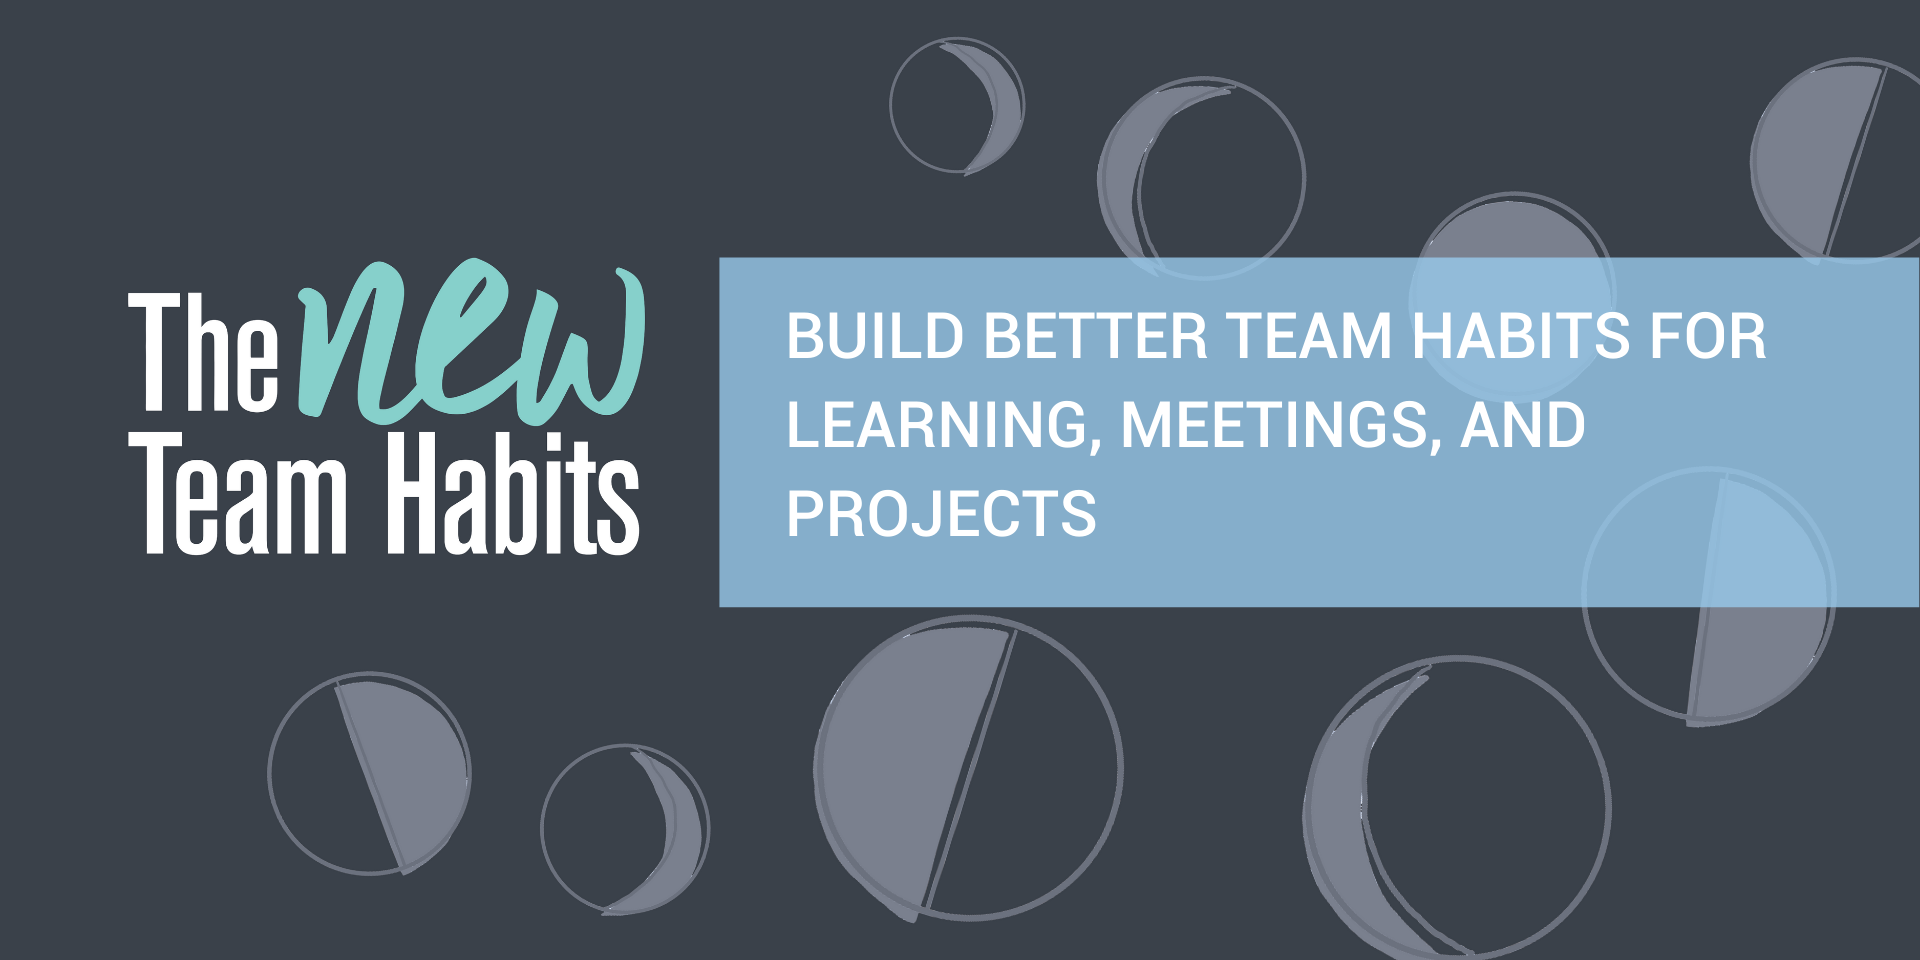 Team Habits Leadership Institute - San Antonio, TX